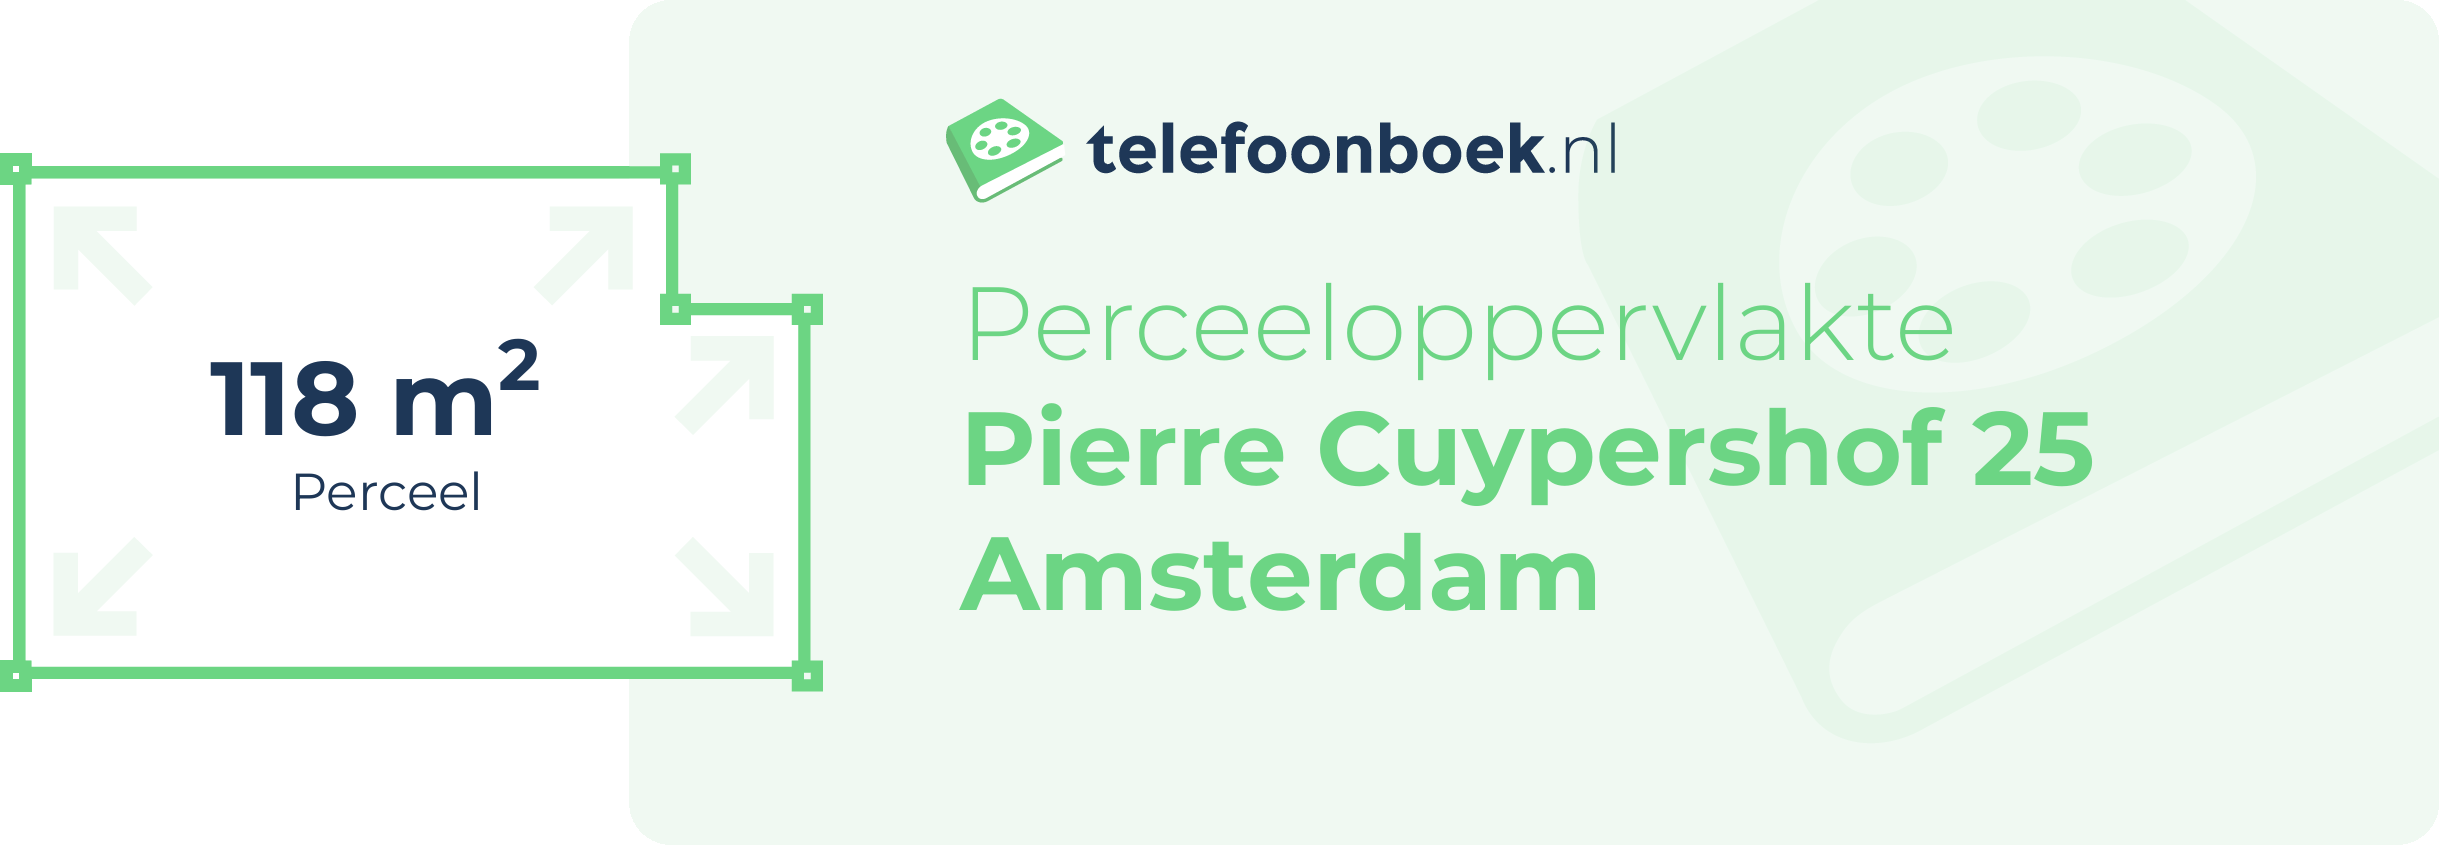 Perceeloppervlakte Pierre Cuypershof 25 Amsterdam